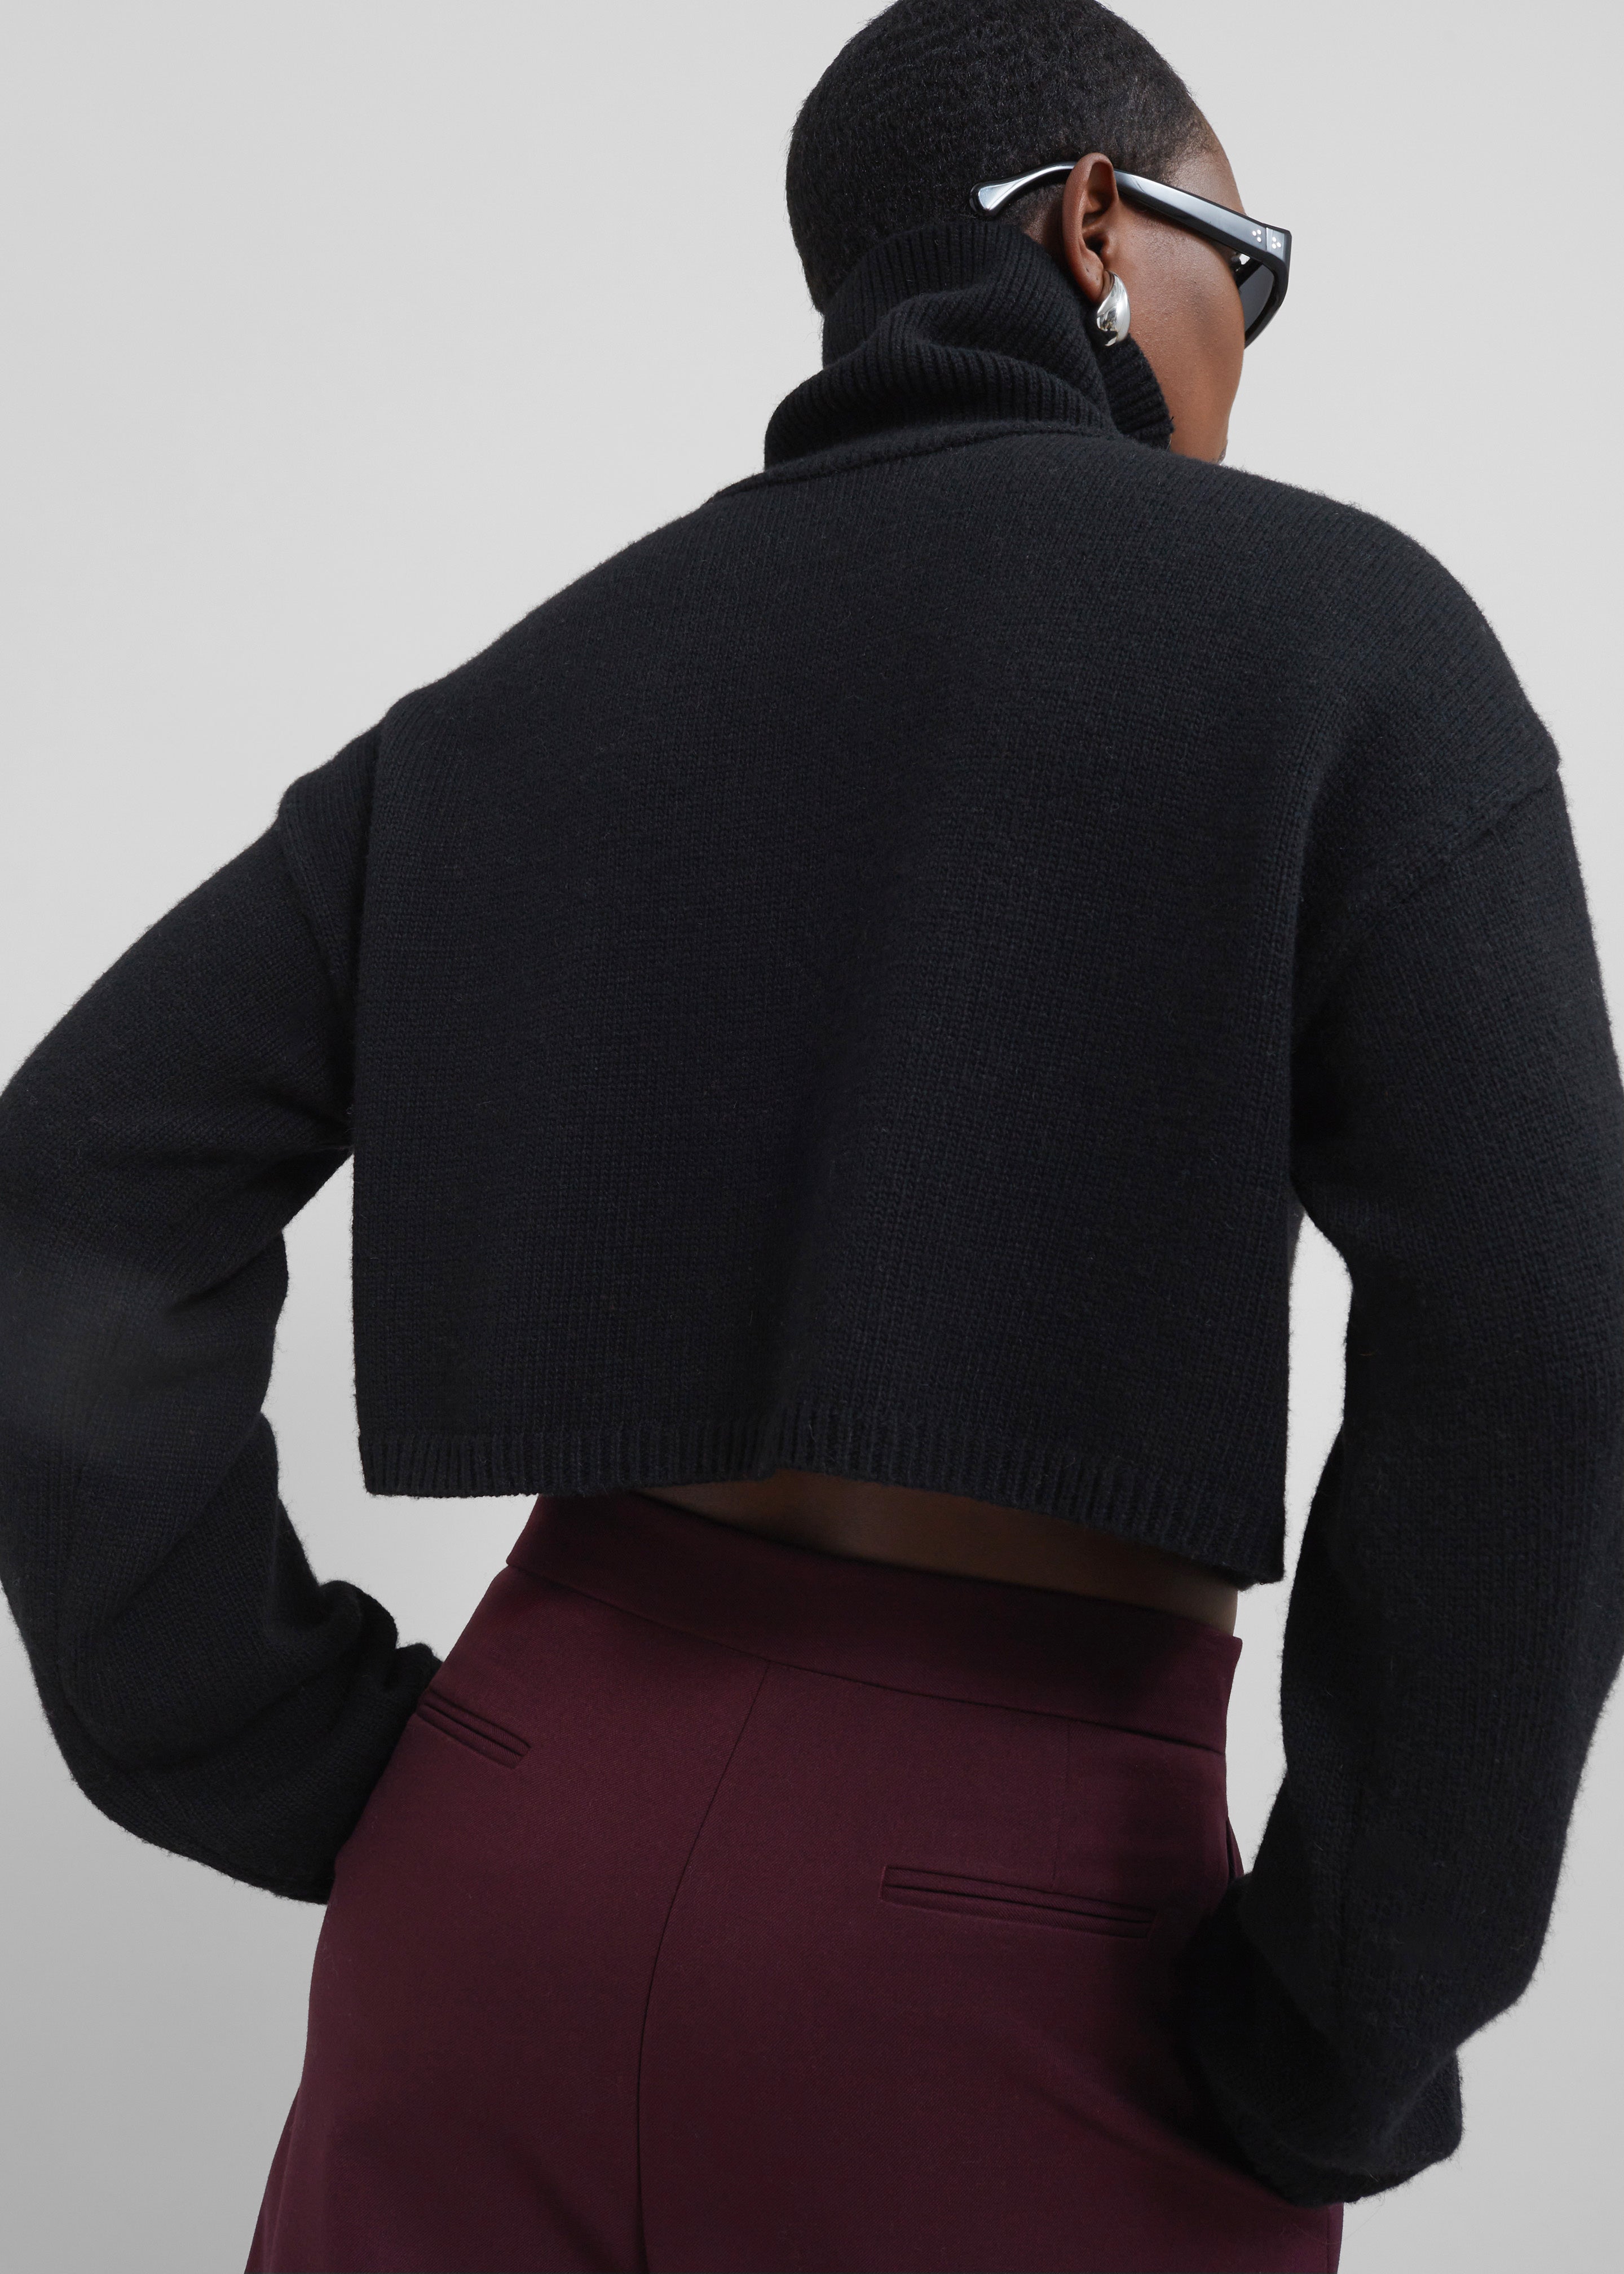 Athina Cropped Turtleneck Sweater - Black - 2